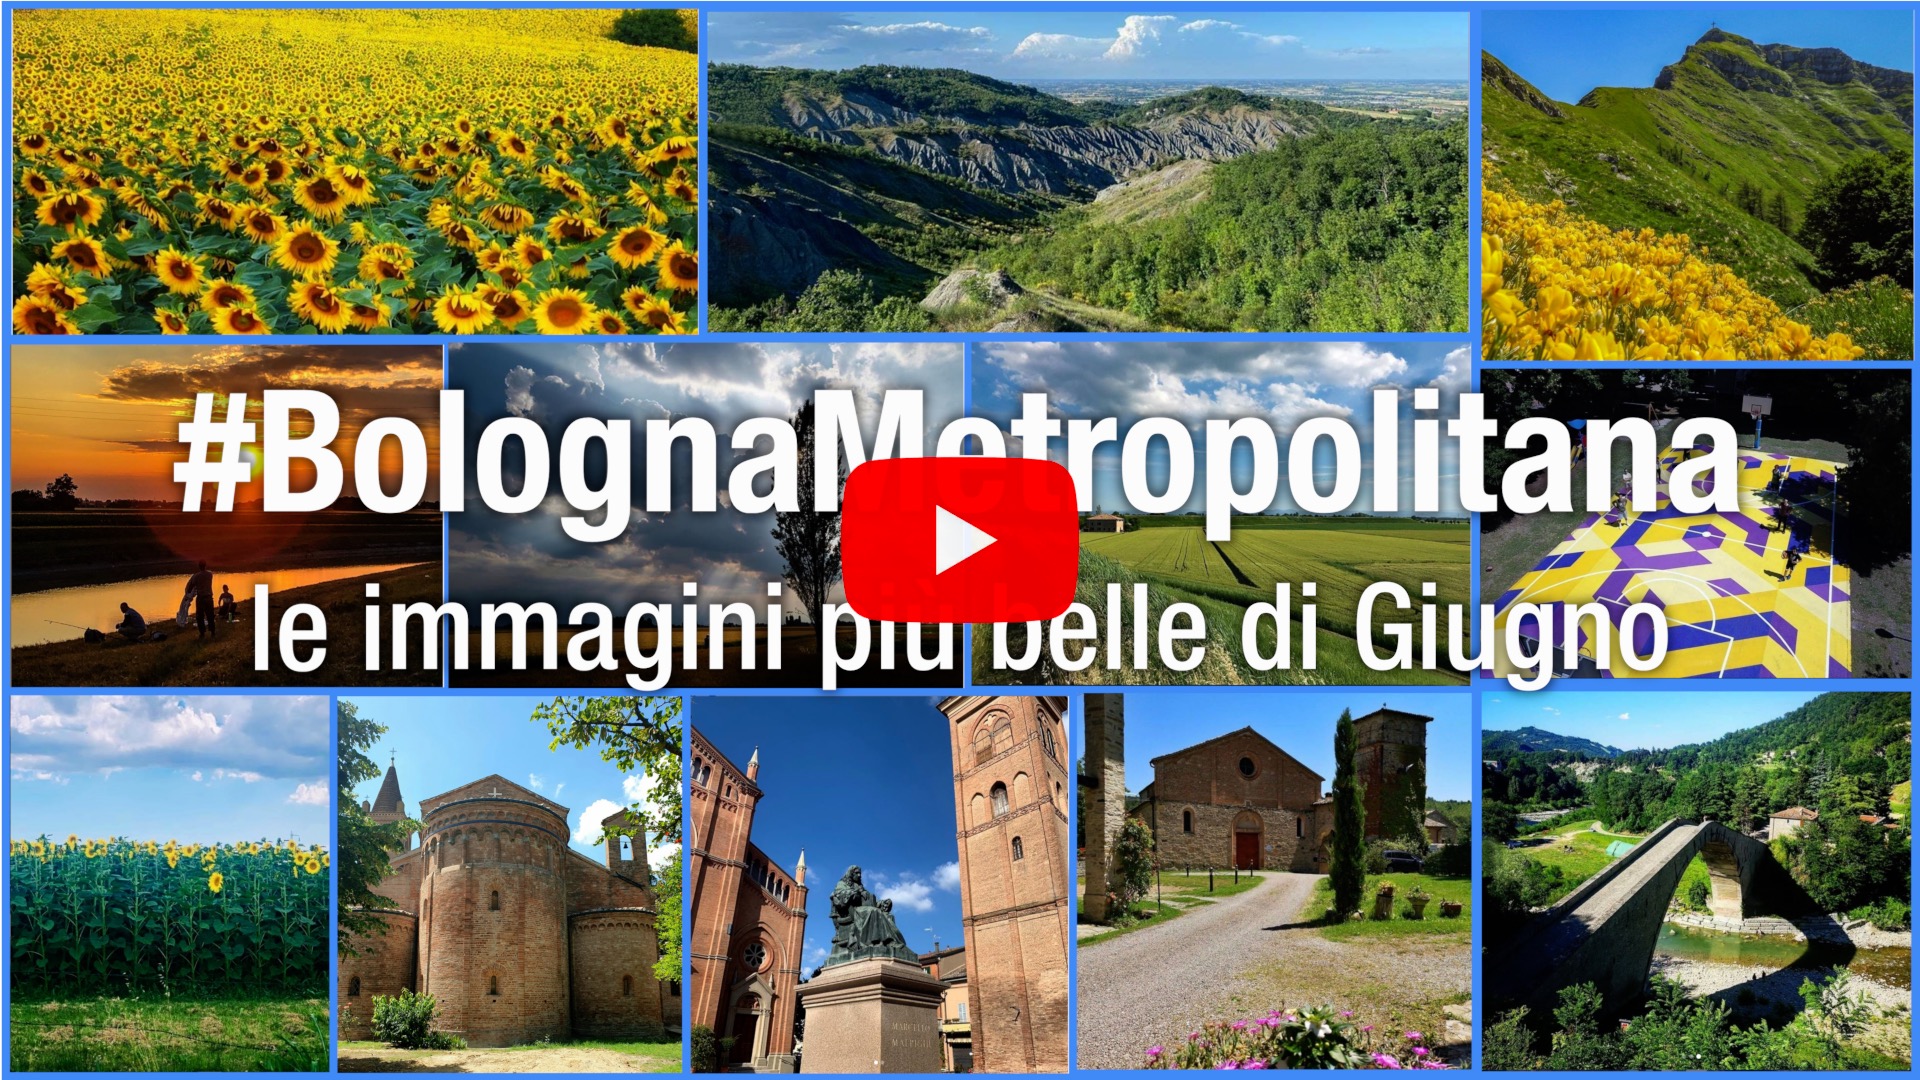 #BolognaMetropolitana - Le immagini più belle di giugno 2020